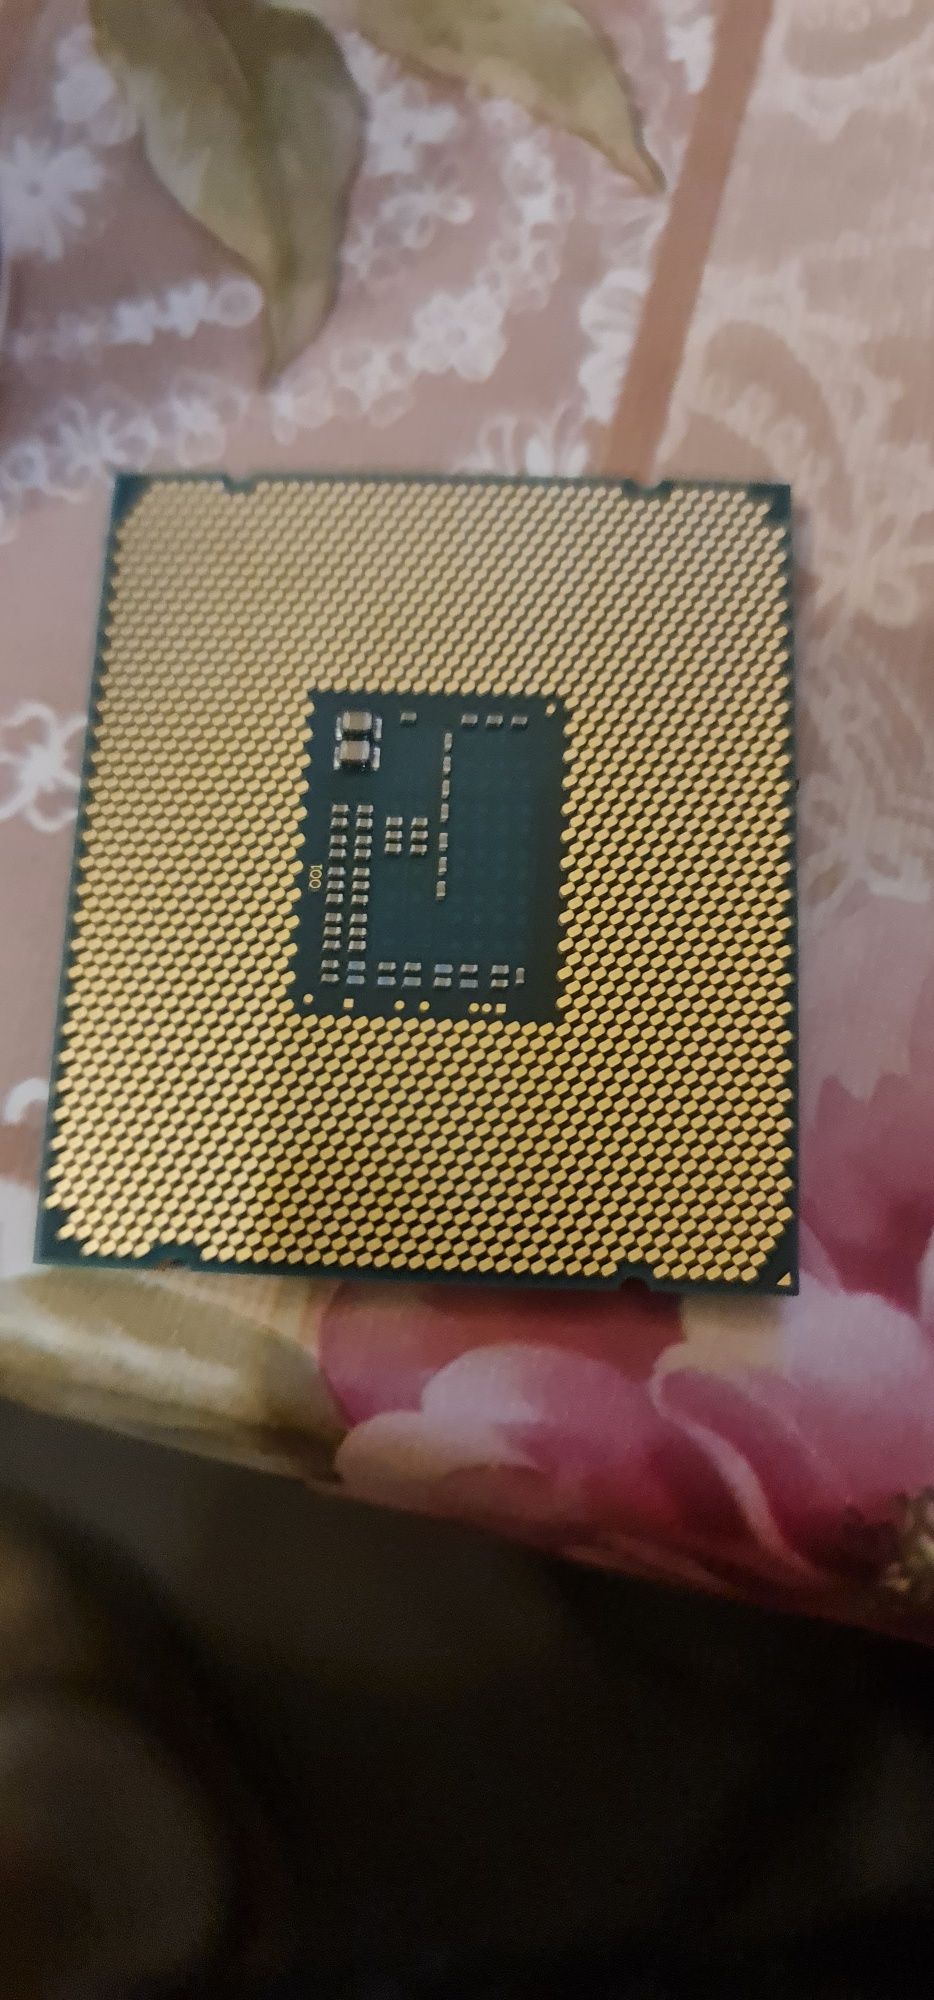 Vand procesor i7 5820k